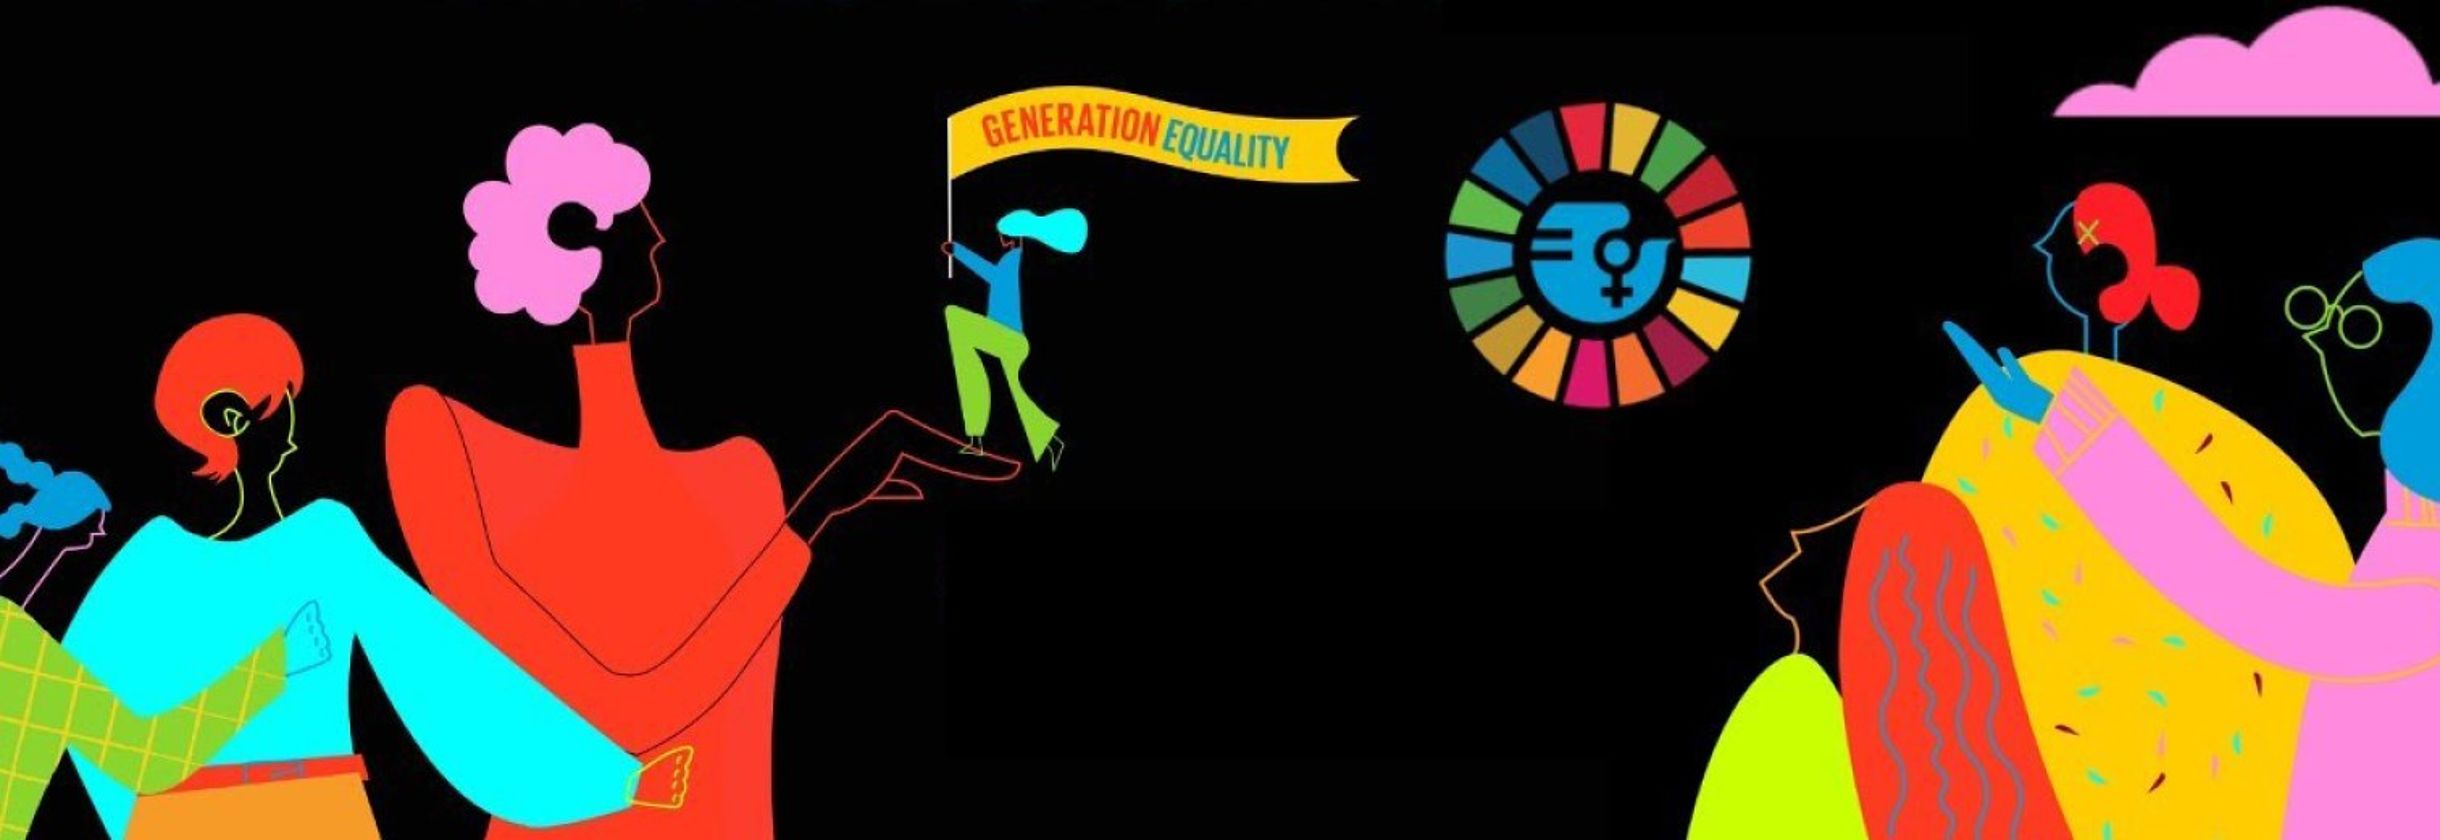 Logo zeigt „Gender Equality” als ein “Sustainable Development Goal”.